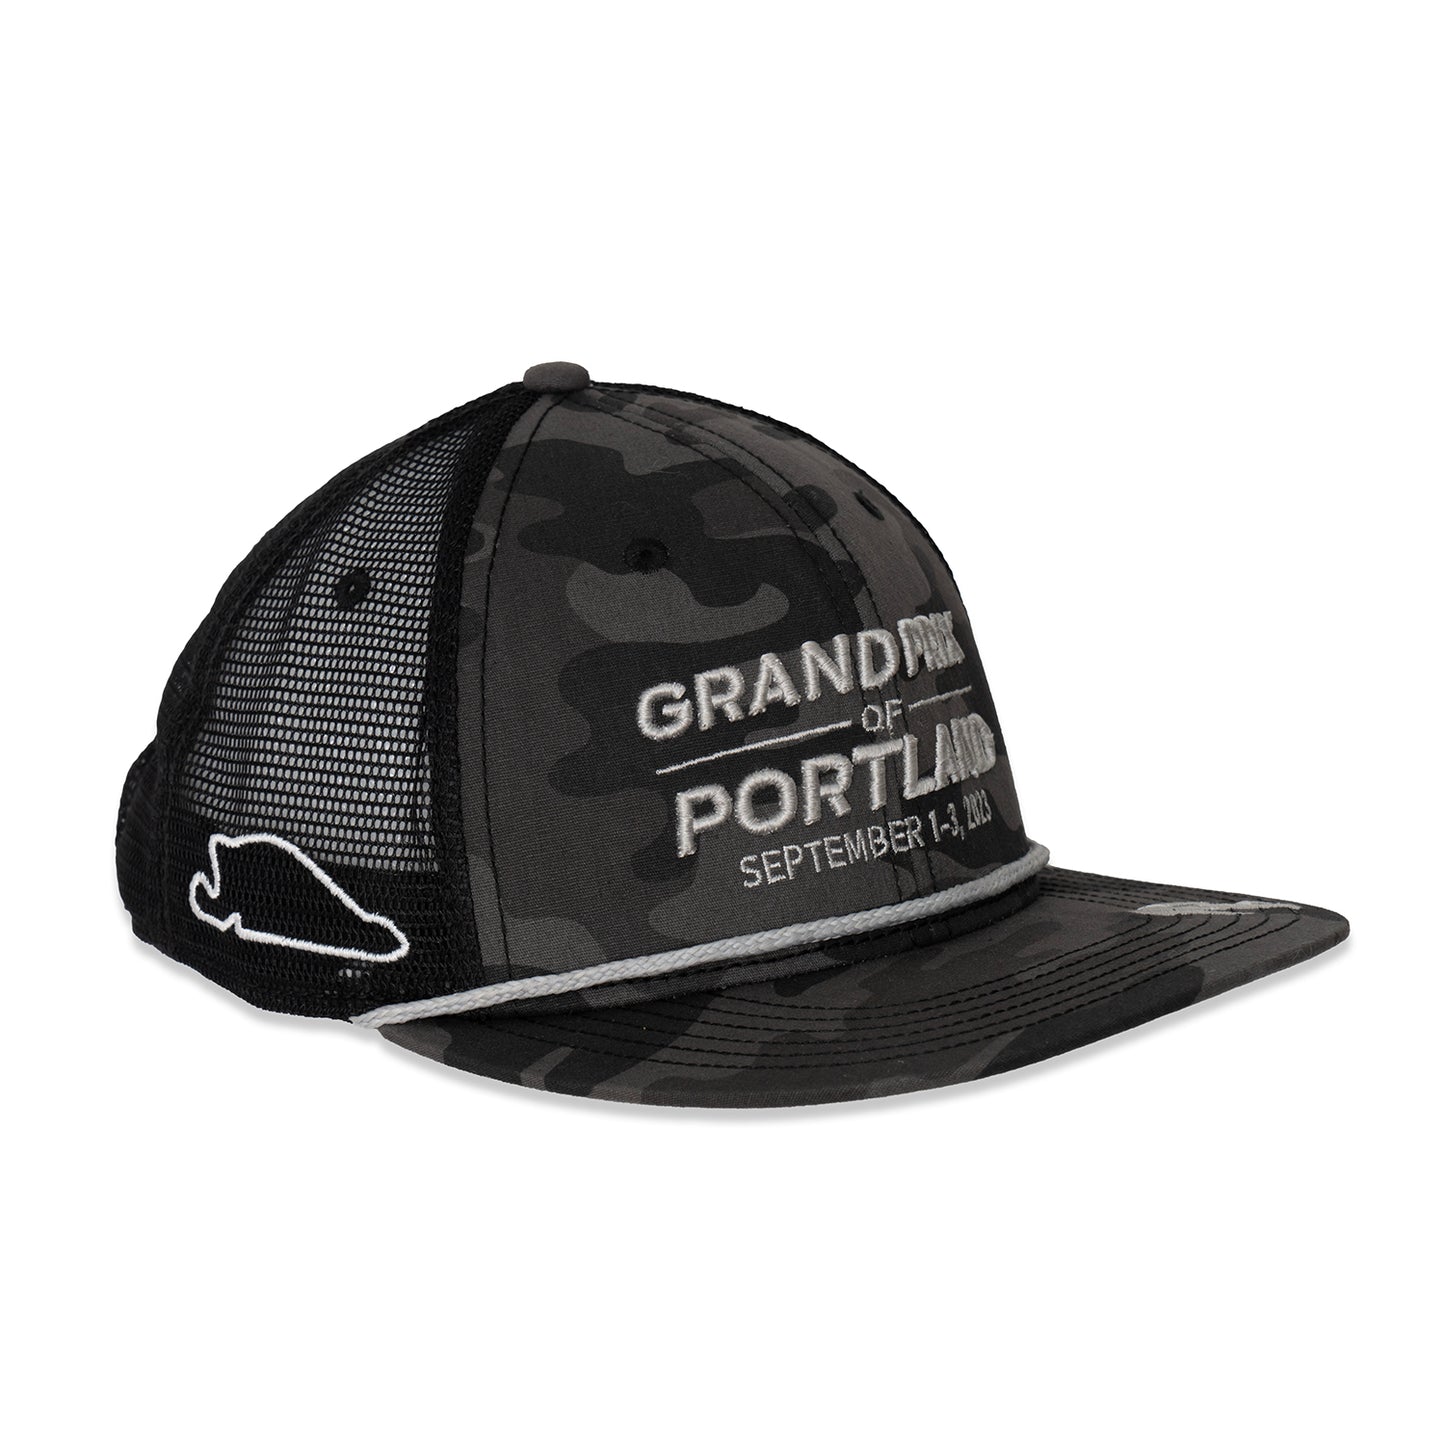 2023 Grand Prix of Portland Flat Bill Hat - Black Camo